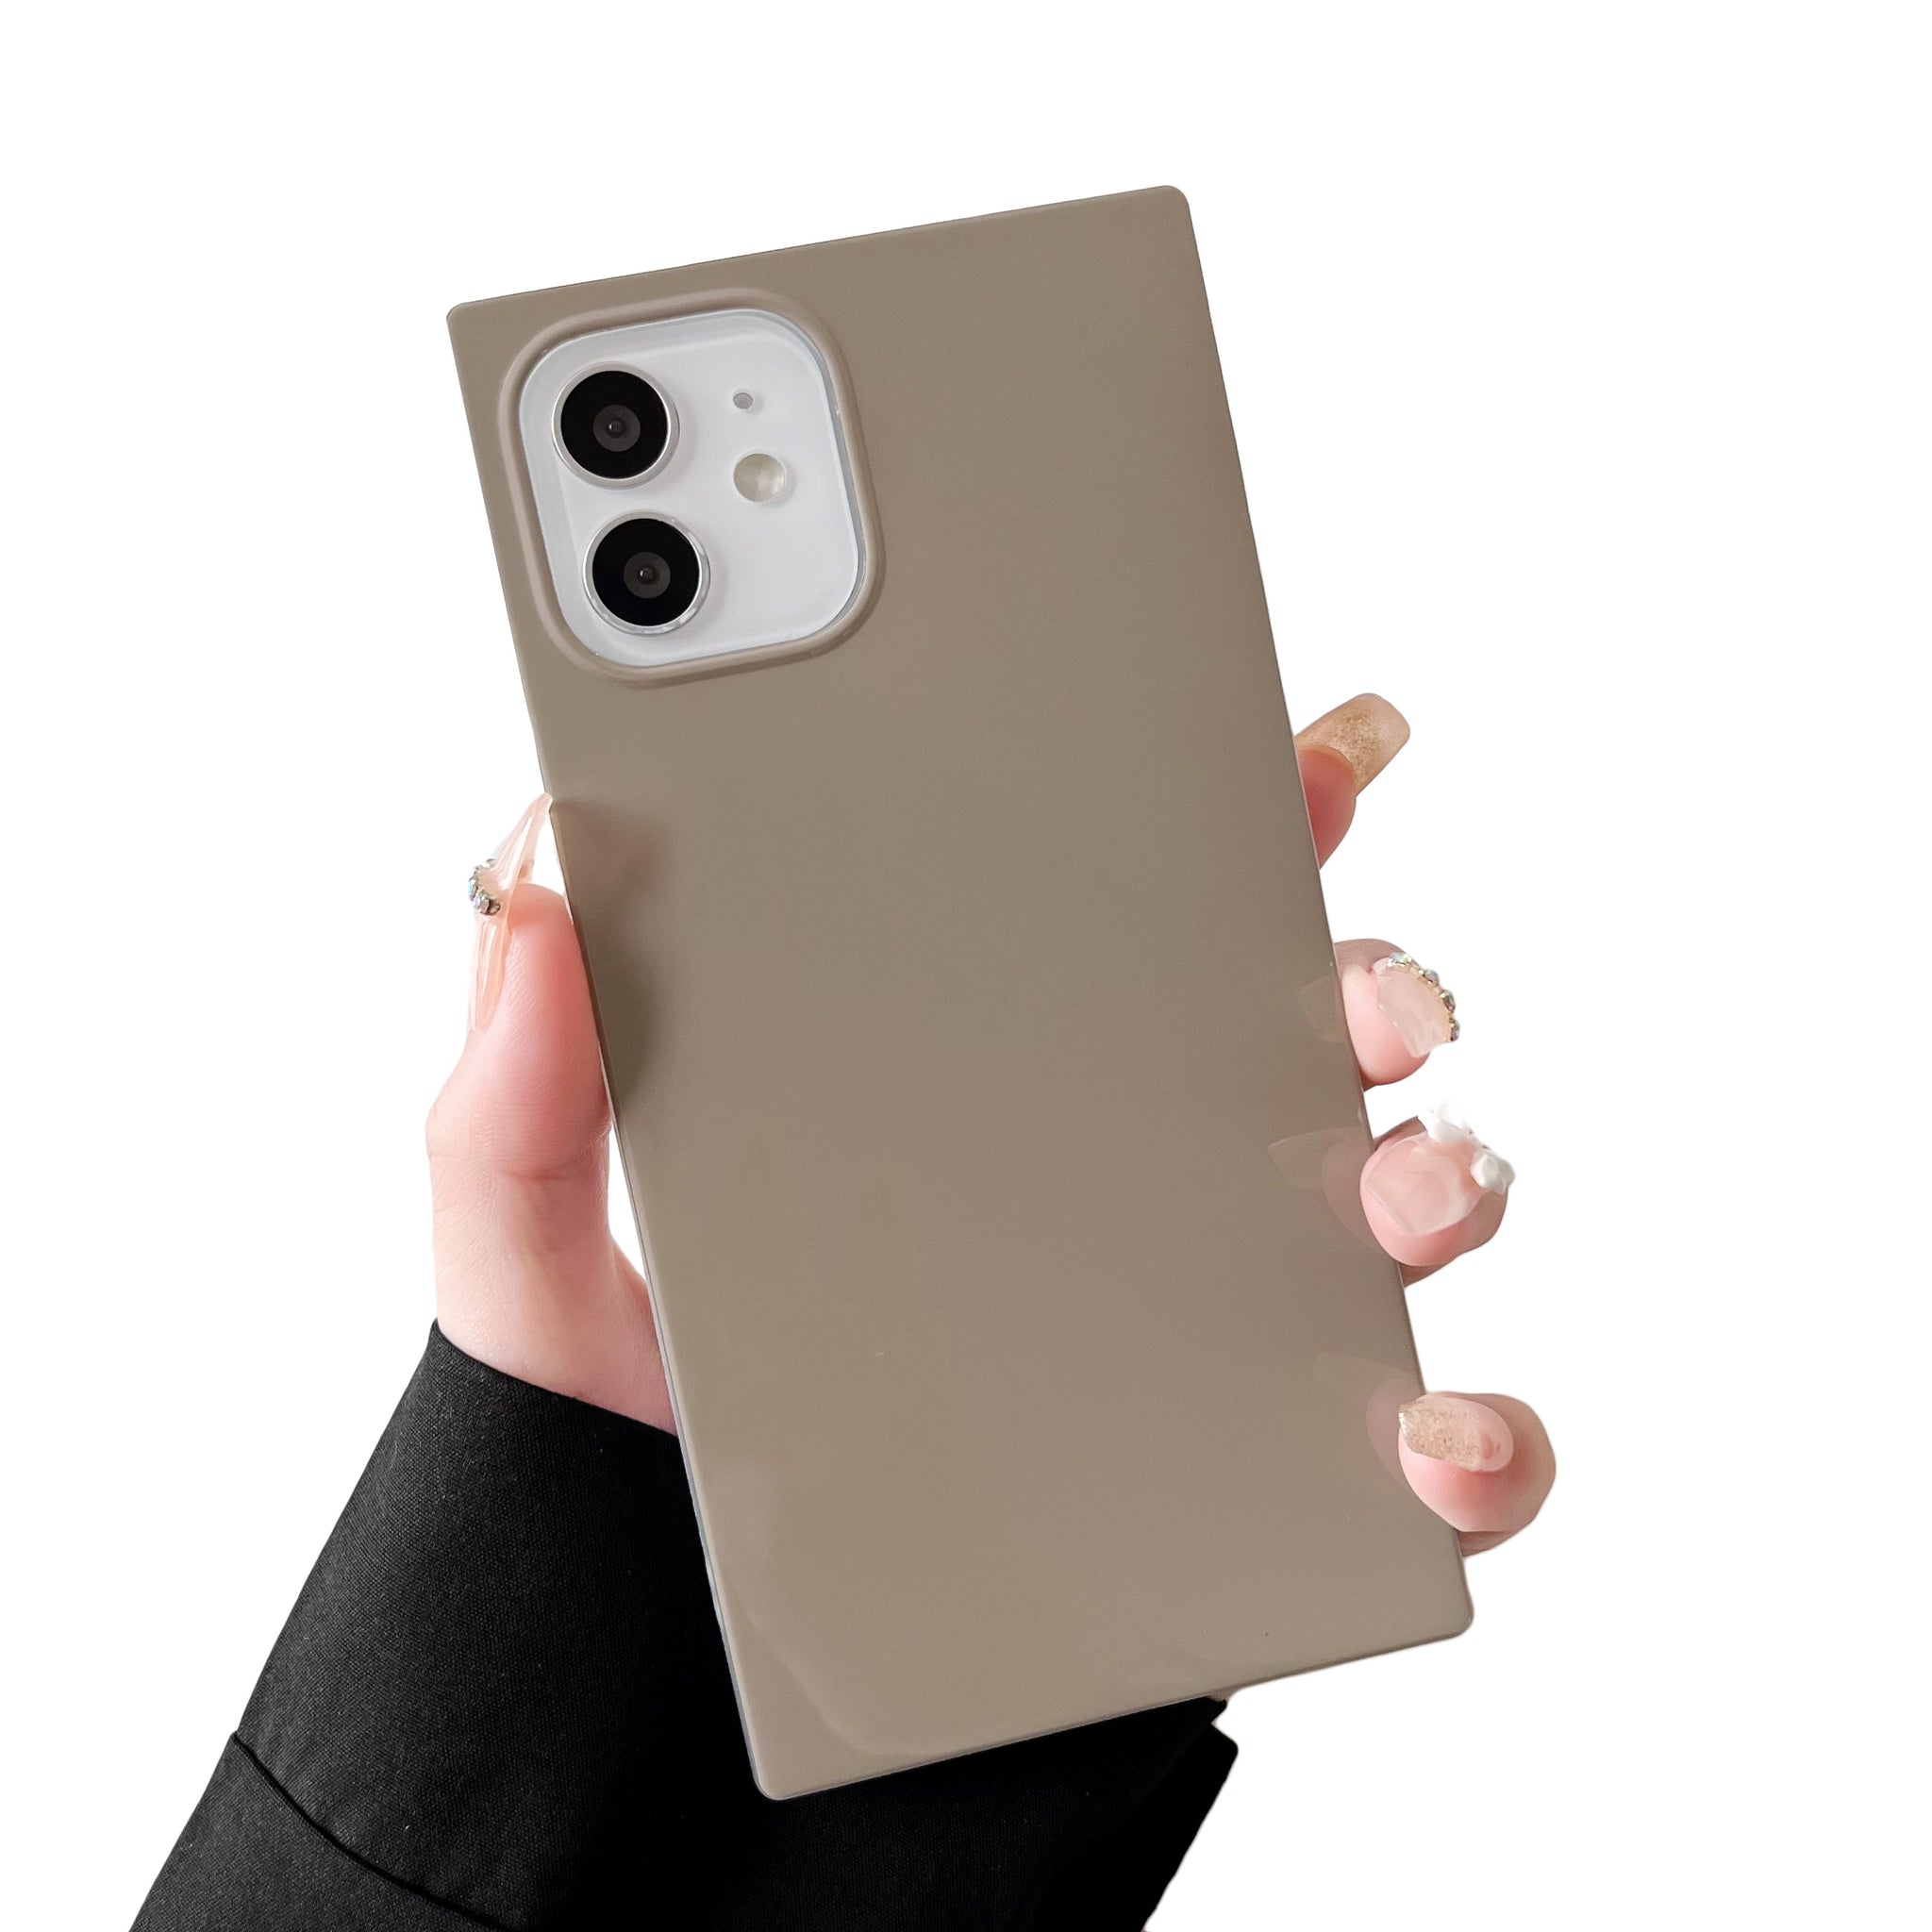 iPhone 11 Pro Case Square Neutral Plain Color (Asphalt Gray)